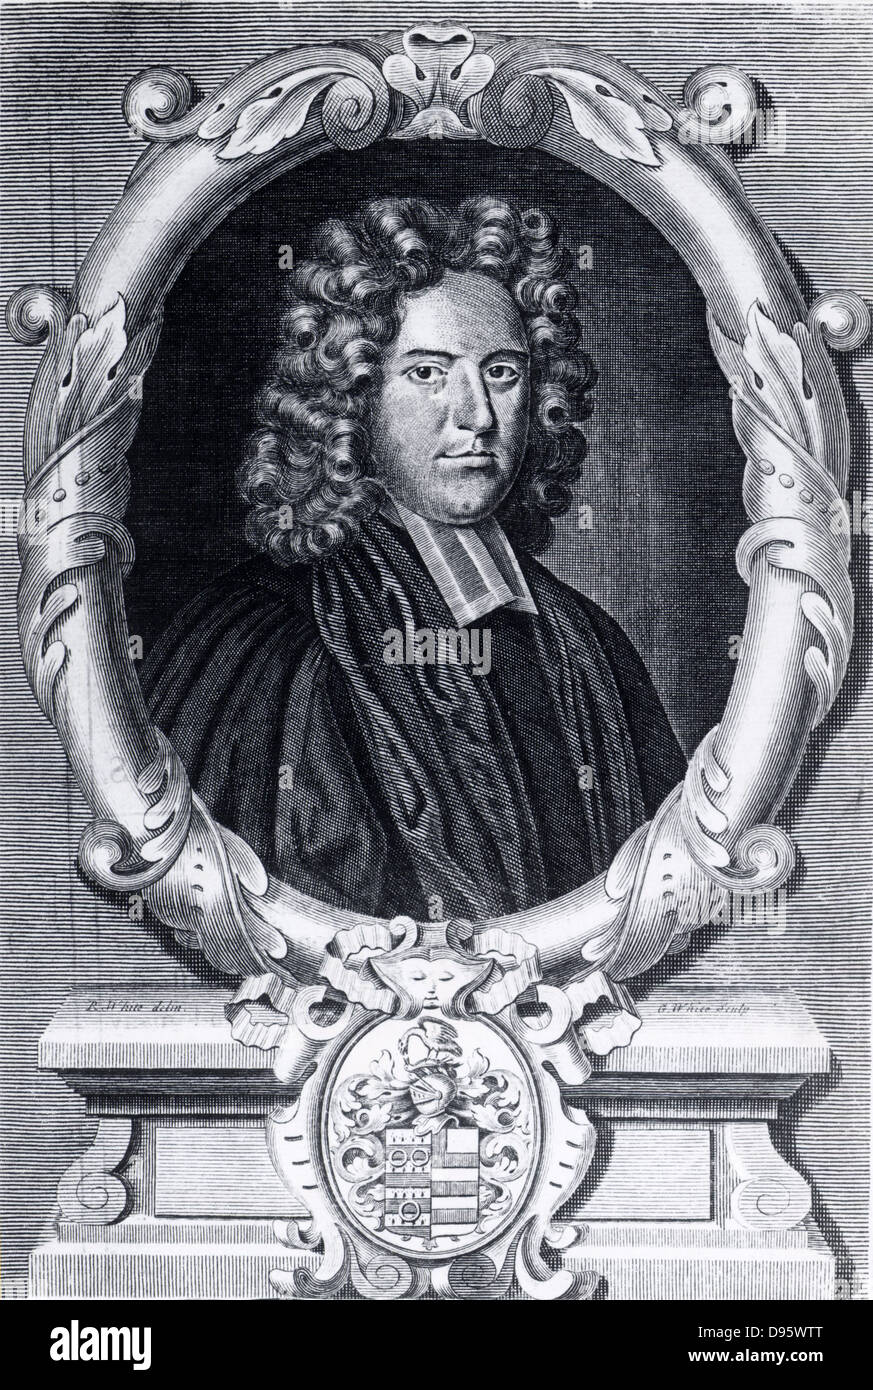 John Harris (1667-1719), englischer Mathematiker, im Alter von 40. Harrison war Sekretär der Royal Society (1709-1710). Gravur aus dem Titelblatt der fünften Ausgabe seines 'Lexikon Technikum" (London, 1736), erste Auflage 1704. Stockfoto